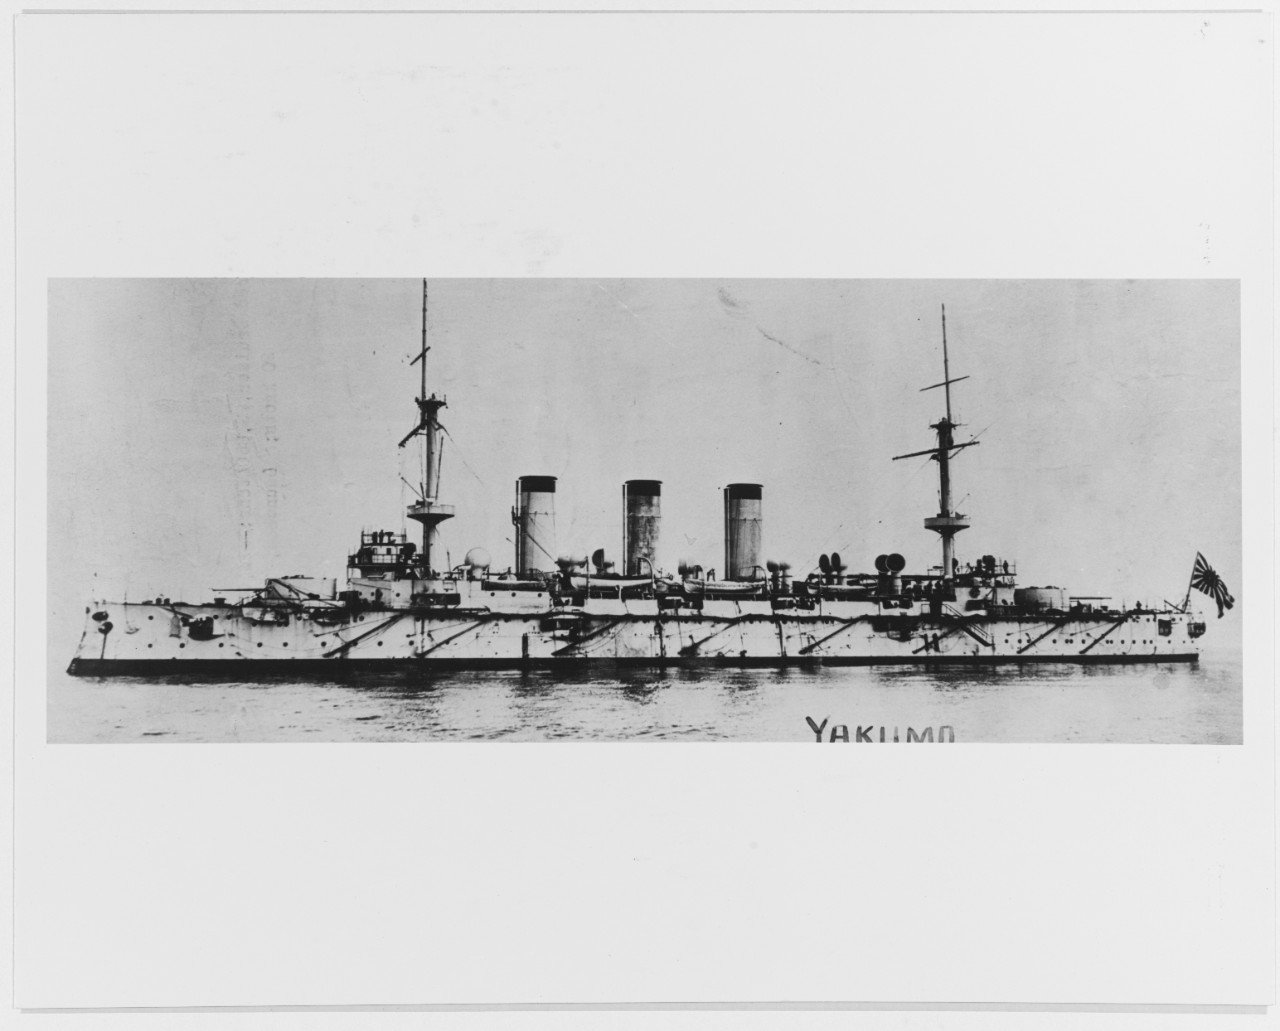 YAKUMO (Japanese armored cruiser, 1899)